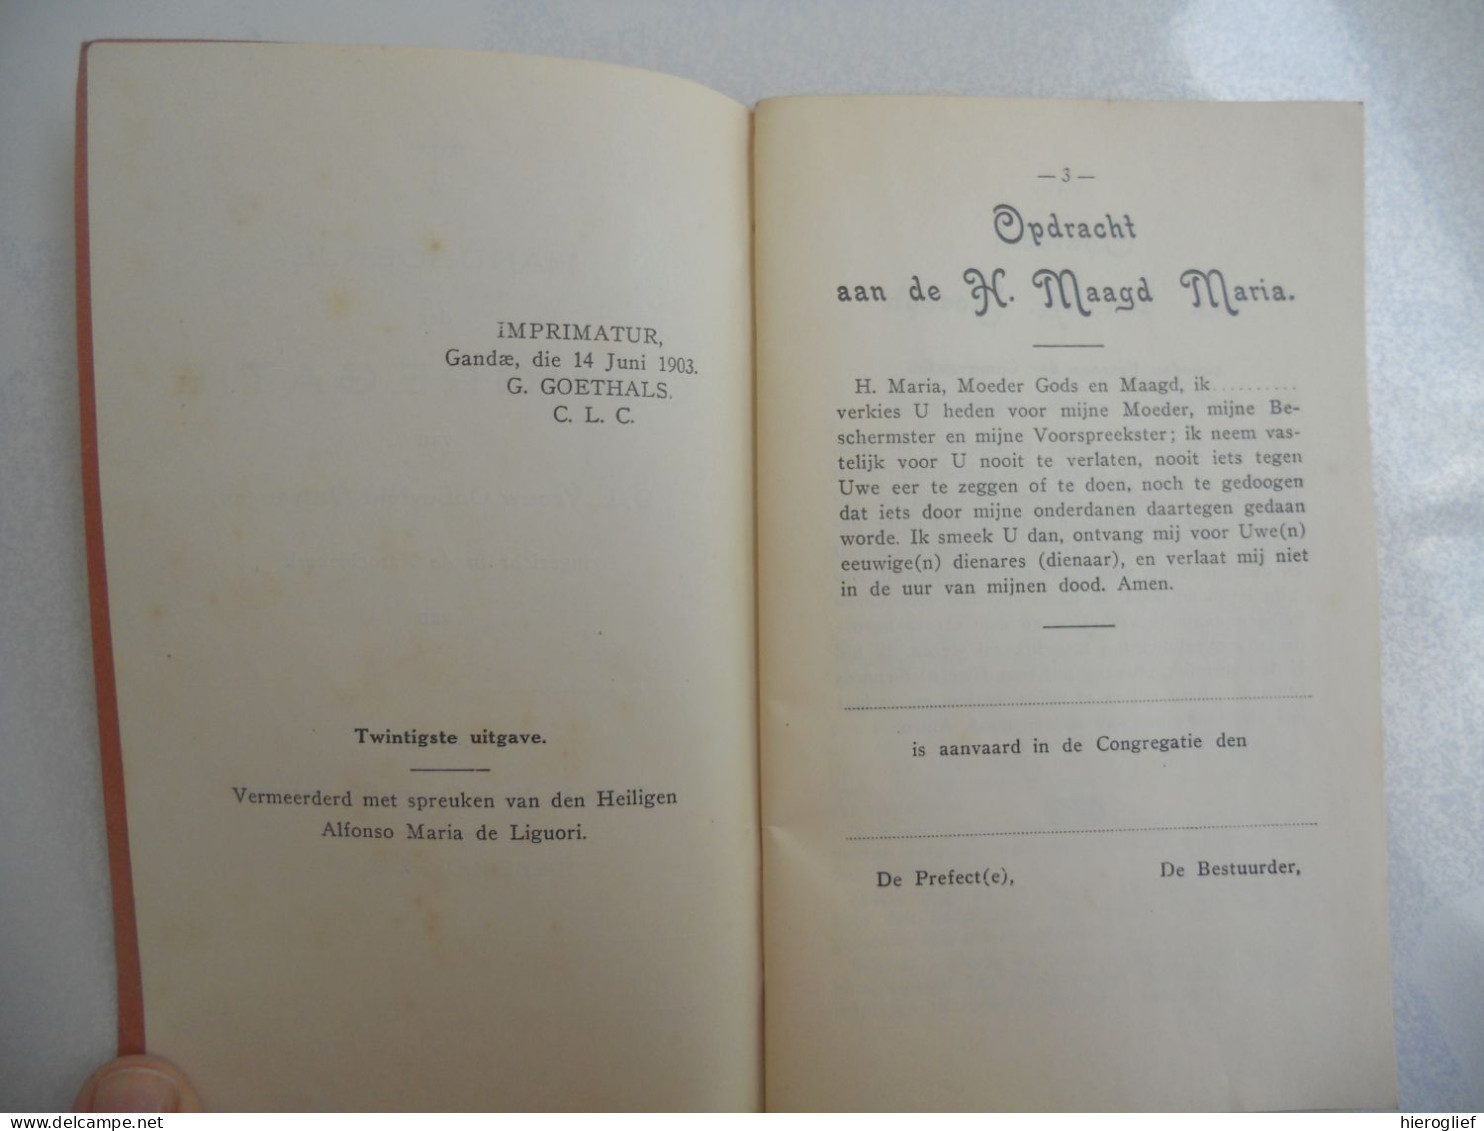 Handboekje Der CONGREGATIE Van O.L. Vrouw Onbevlekt Ontvangen / Impr 1903 Denderrmonde Van Lantschoot Moens - Anciens